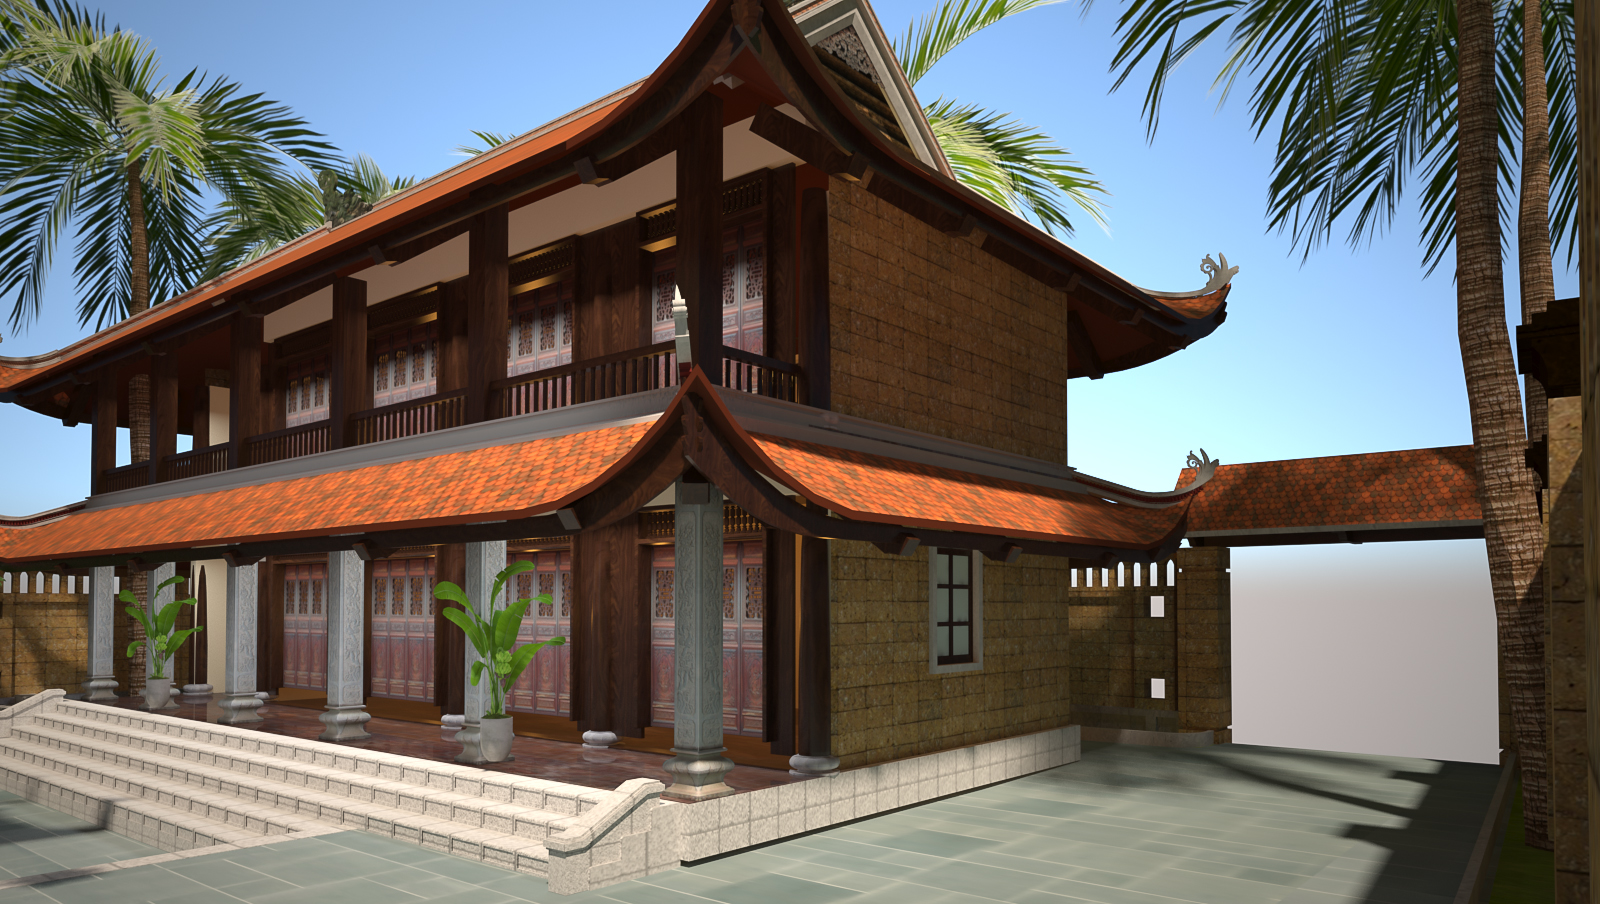 Thiết kế Nhà tại Nam Định Anh Nam - Nam Định 1644112937 6